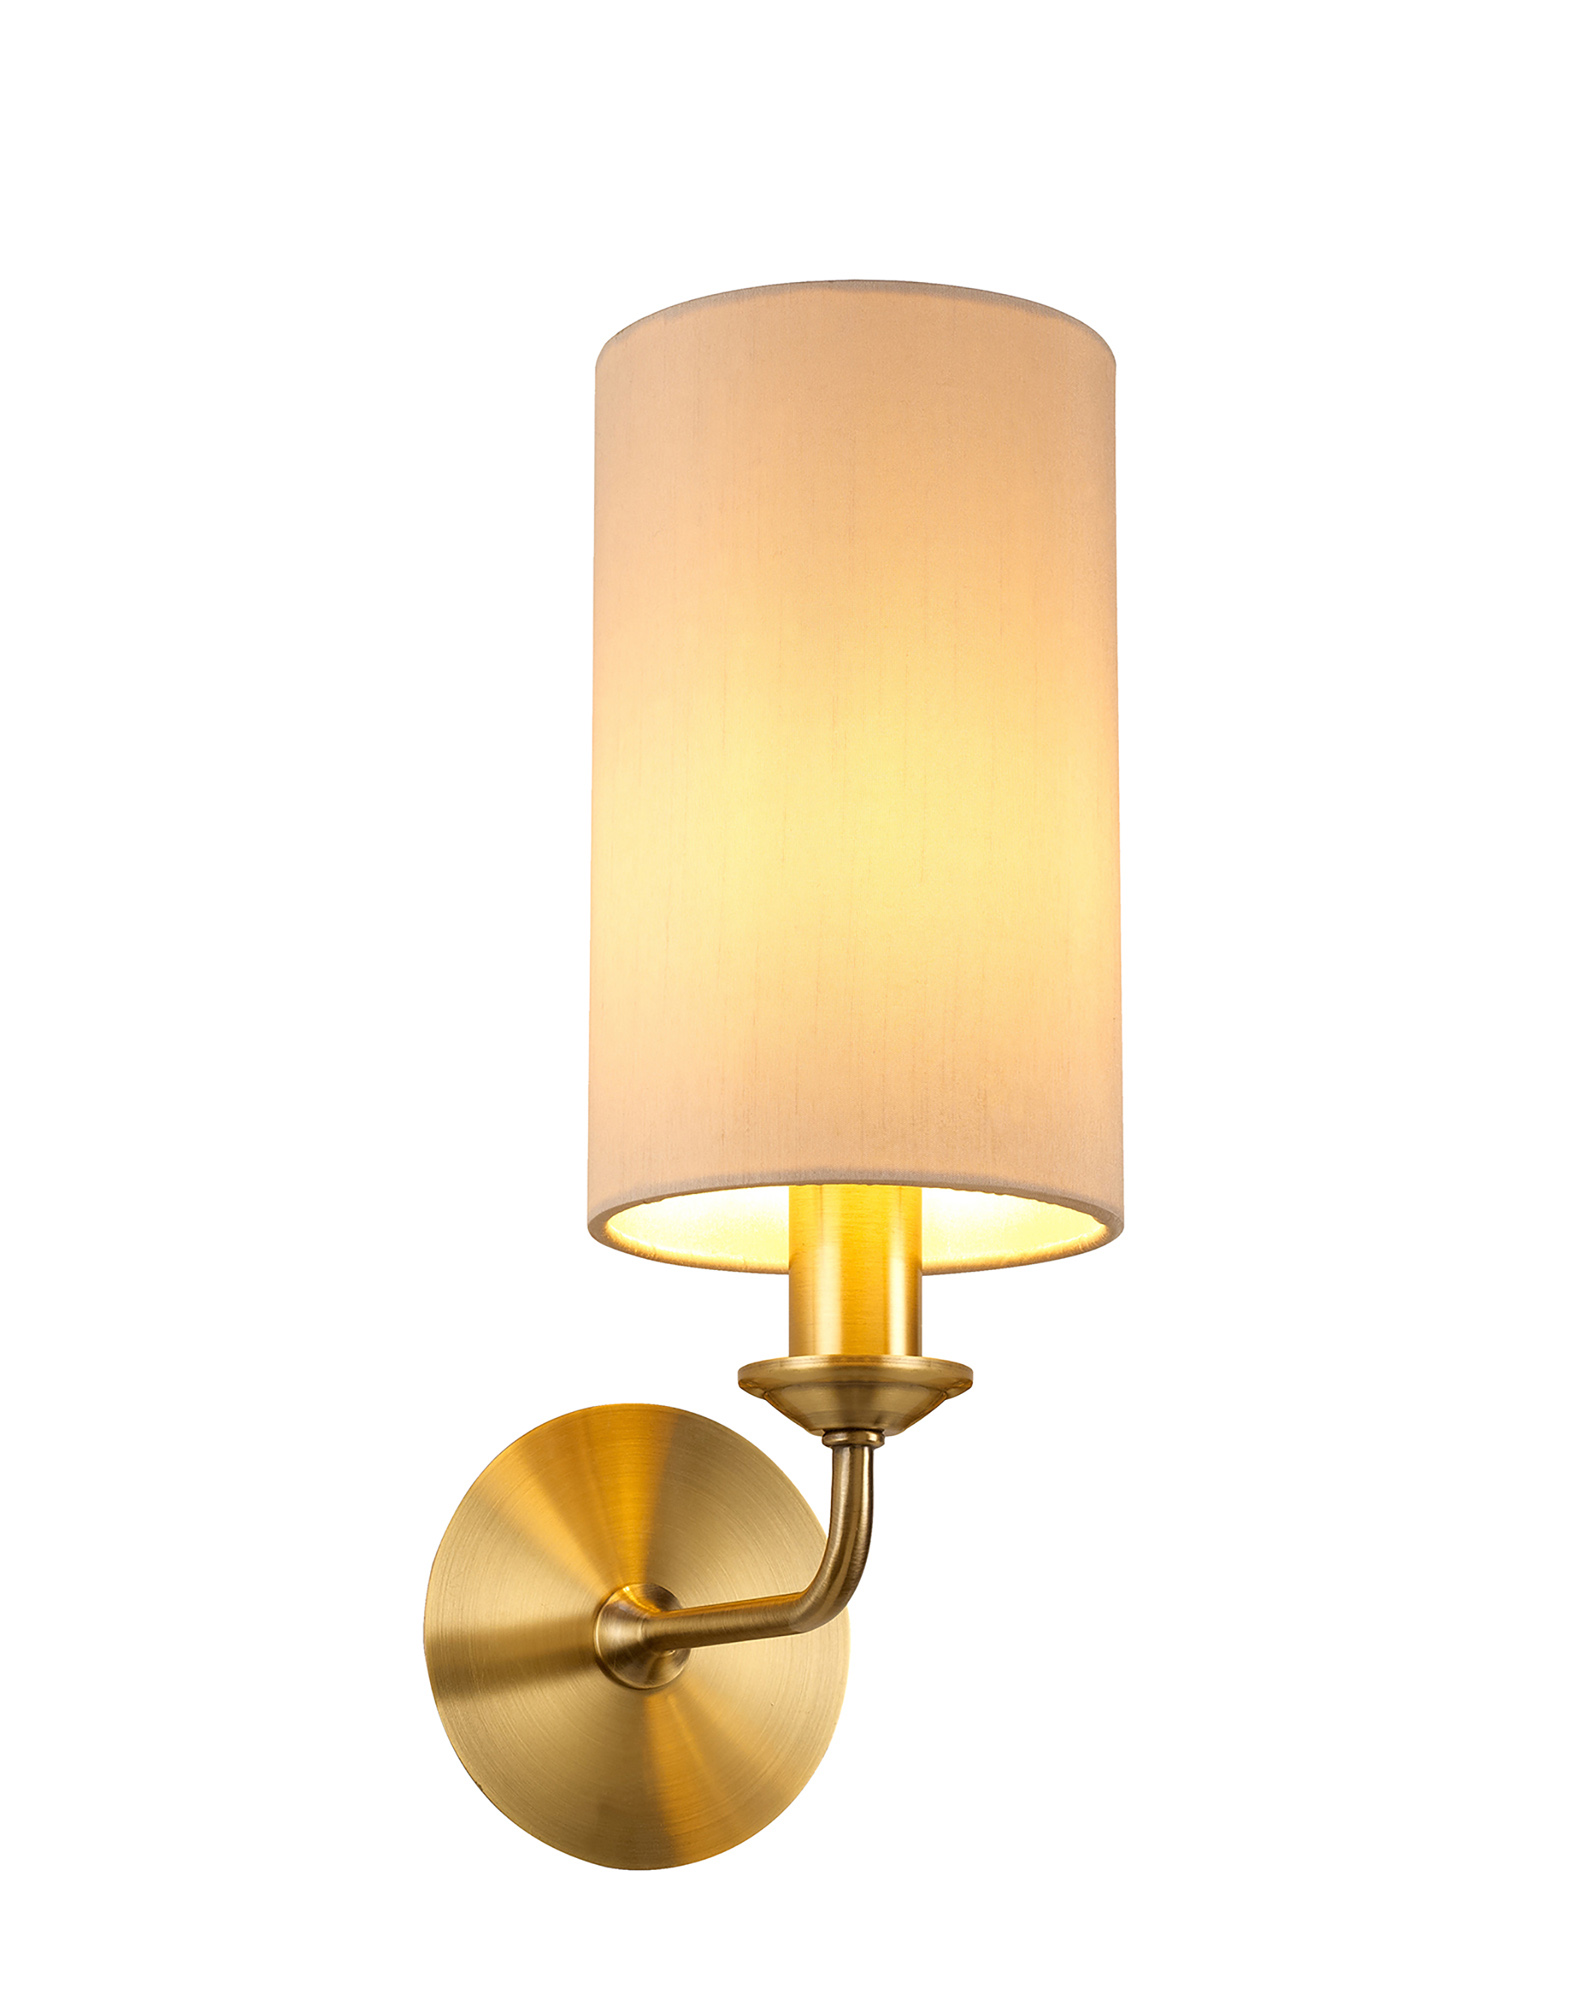 DK0041  Banyan Wall Lamp 1 Light Antique Brass; Nude Beige/Moonlight